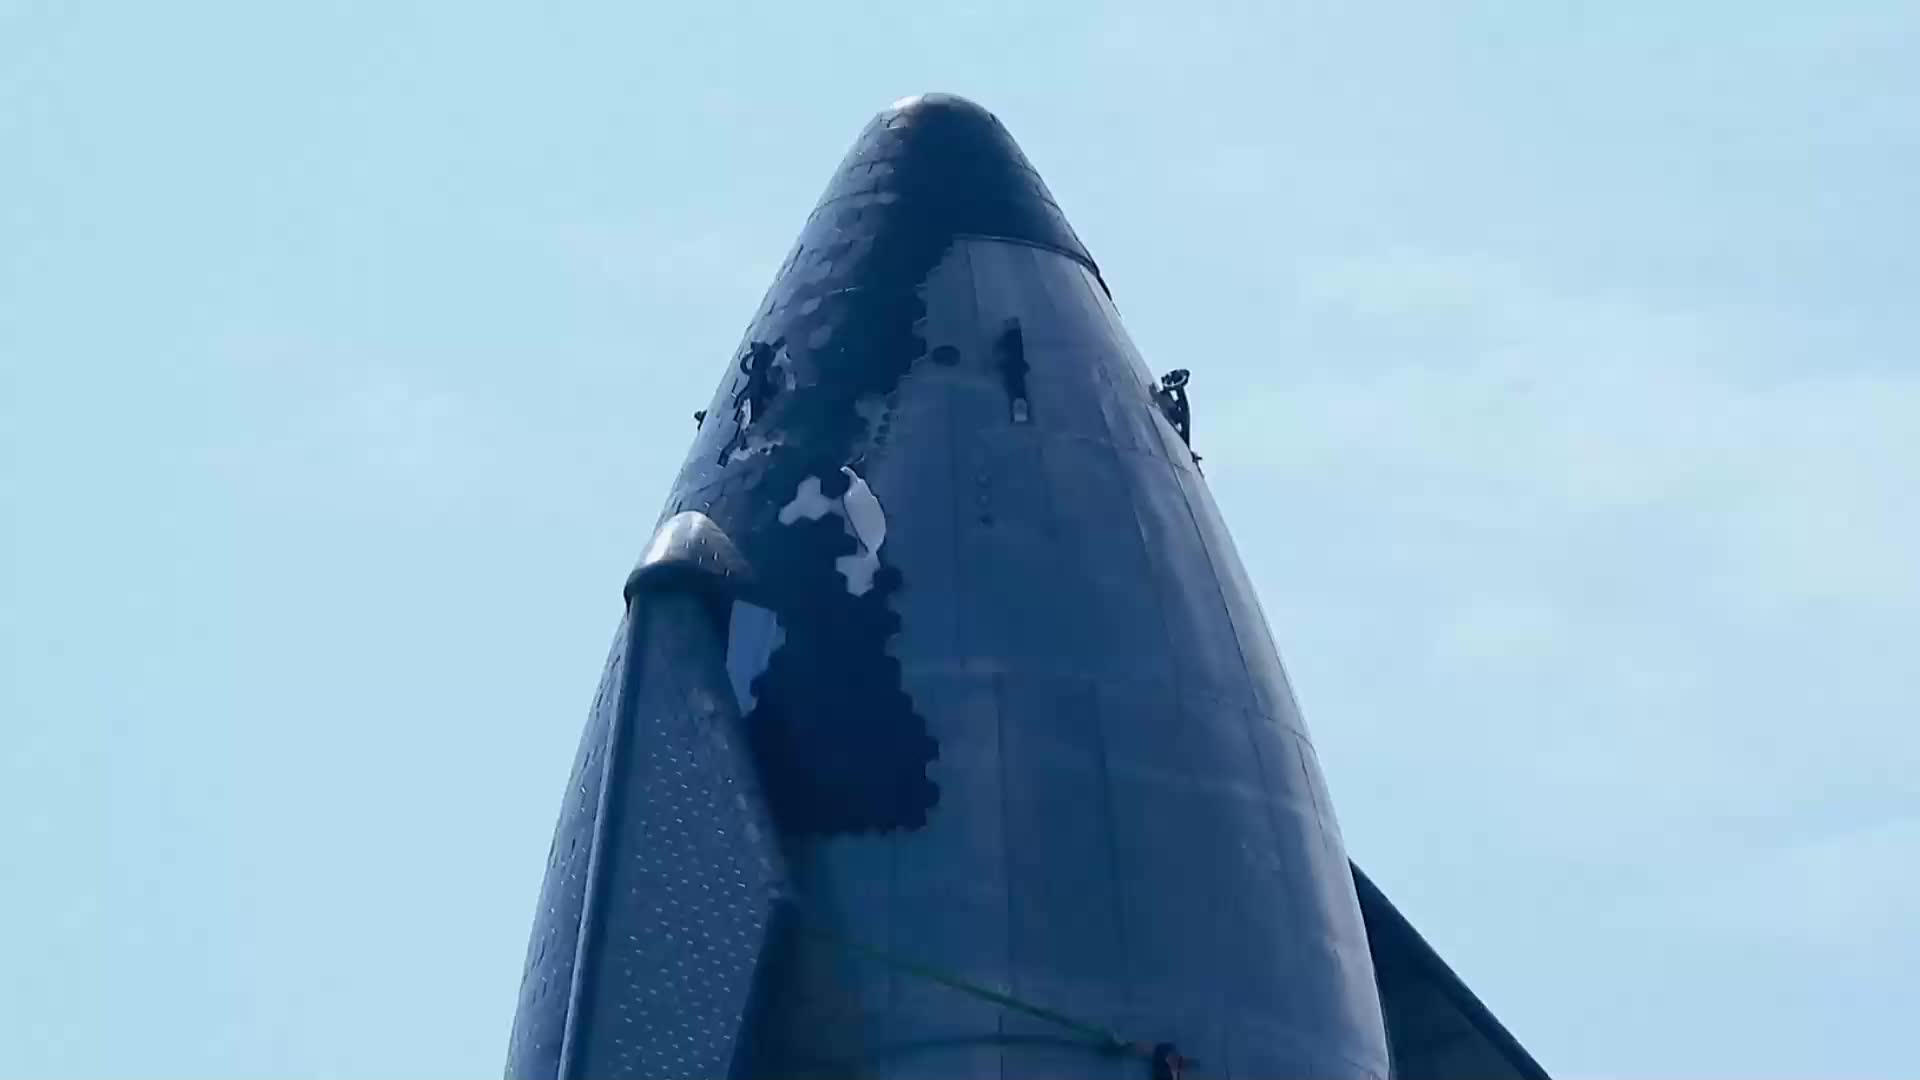 SpaceX星舰20隔热瓦损坏情况近距离拍摄